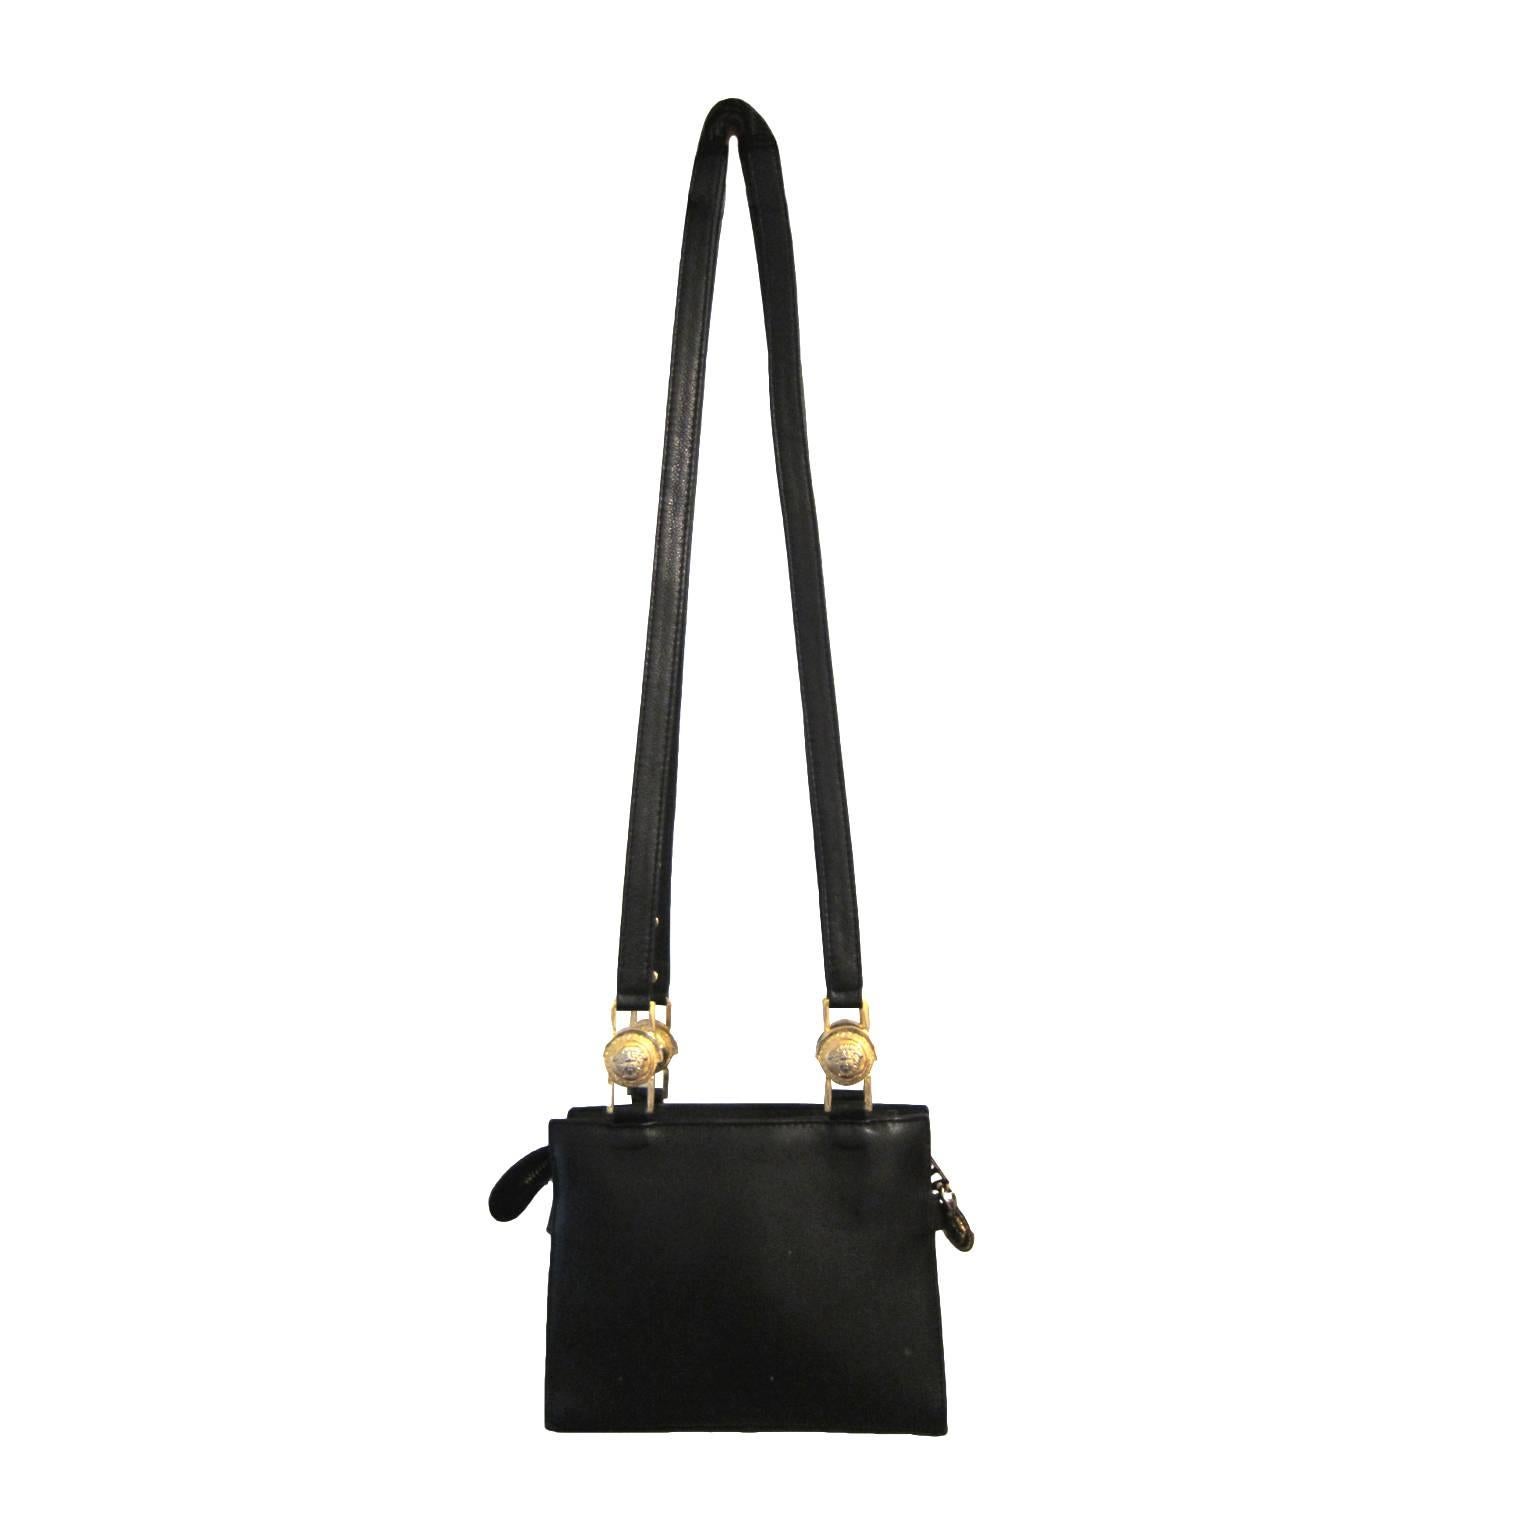 Gianni Versace Couture mini black chain purse with gold medusa.
Sz : 13,5 x 18 x 5 cm
Total length shoulder strap : 105 cm